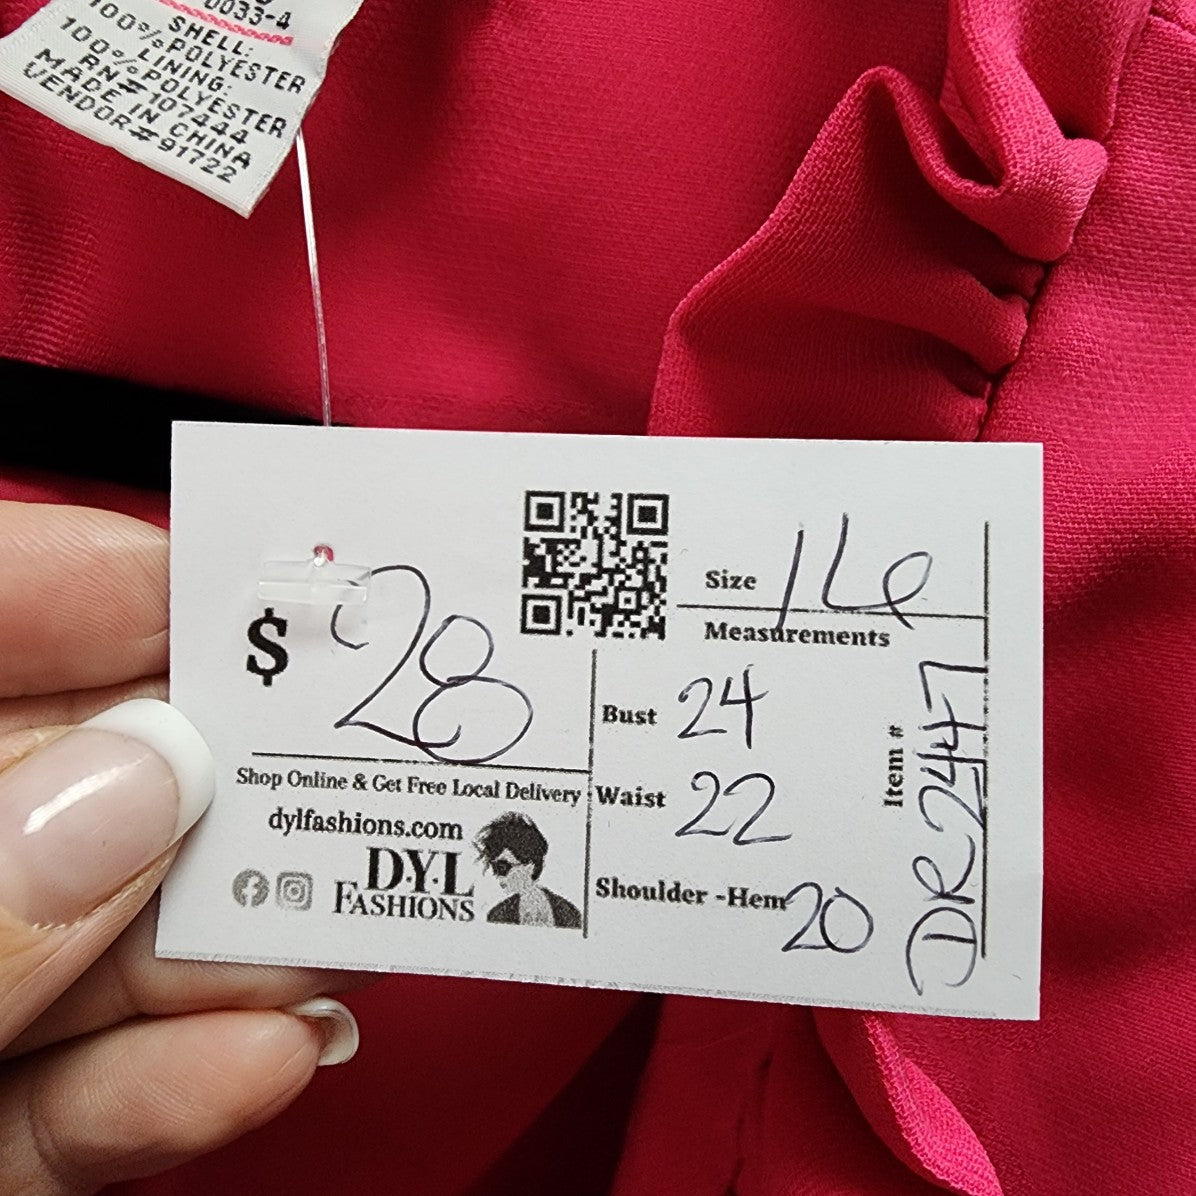 Jessica London Pink Ruffle Blazer Jacket Size 16